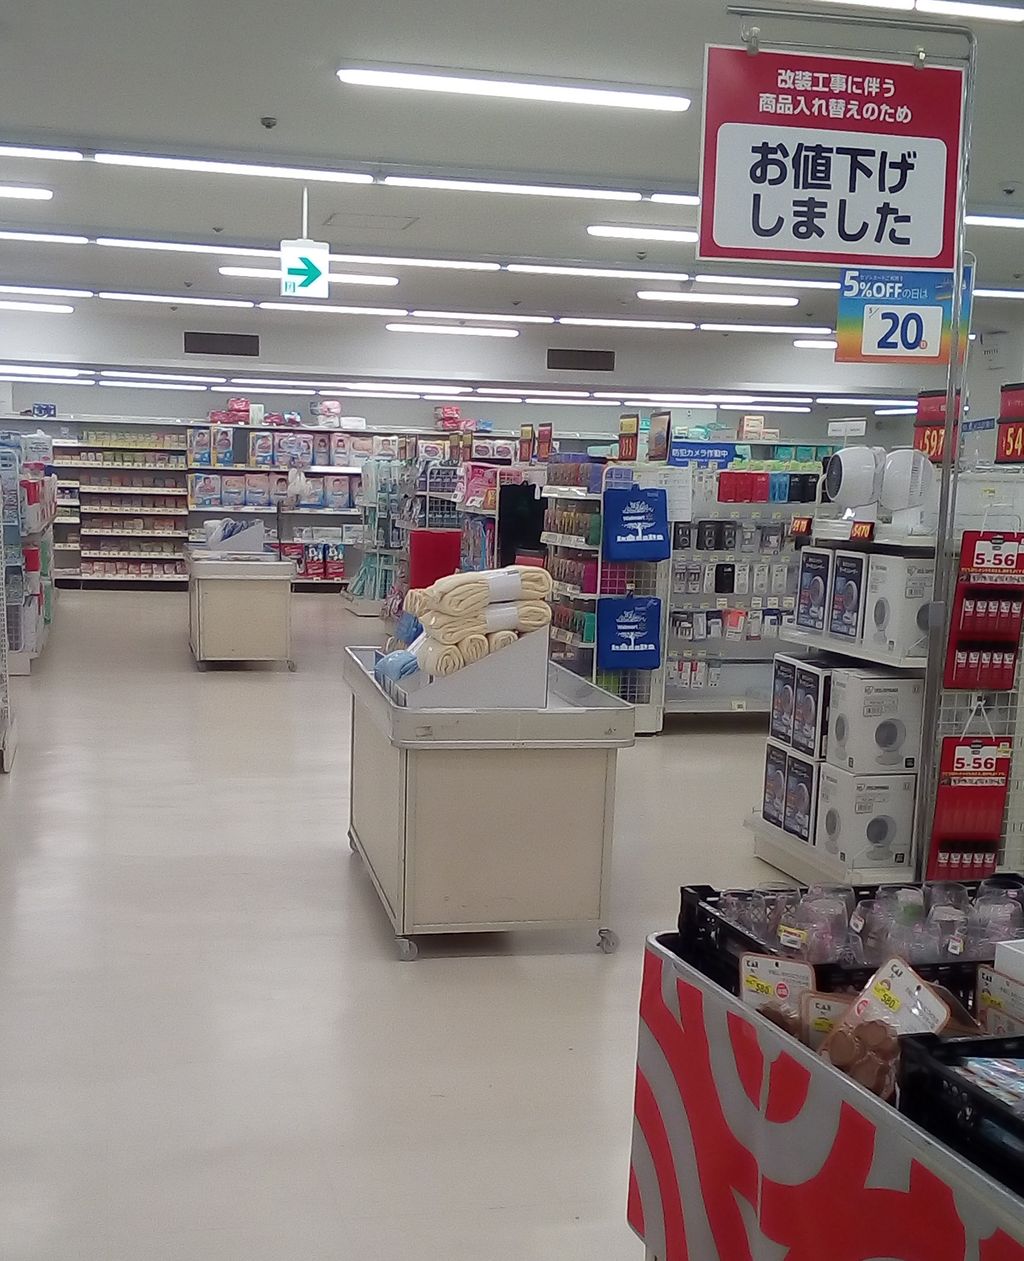 5 31に改装オープン 西友川西店がリニューアル 宝塚暮らしをもっと楽しもう 情報誌comipa